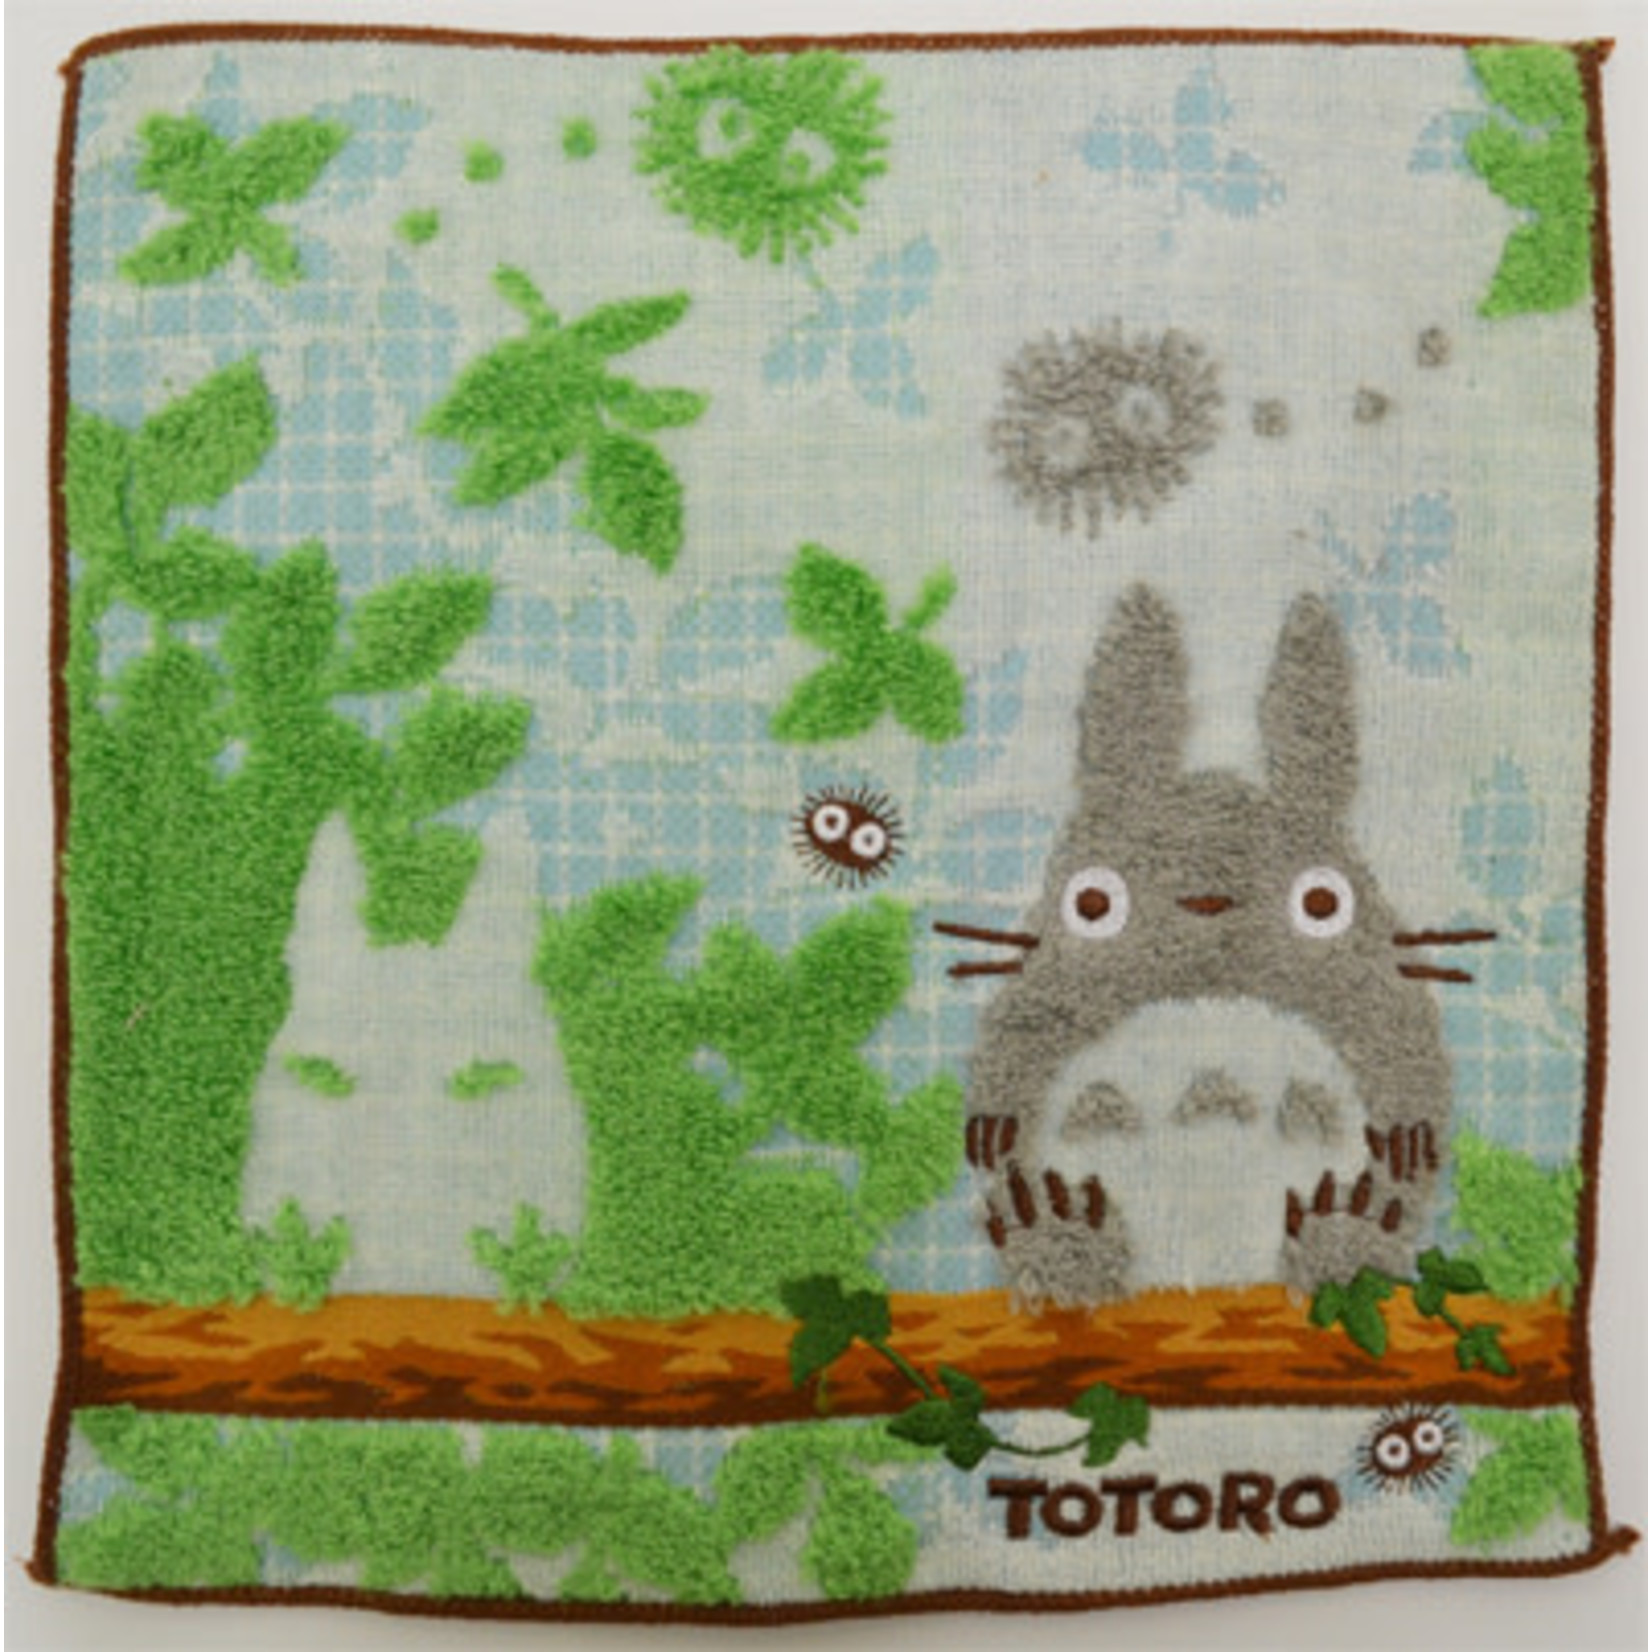 Totoro Washcloth "Resting" - 0594107900